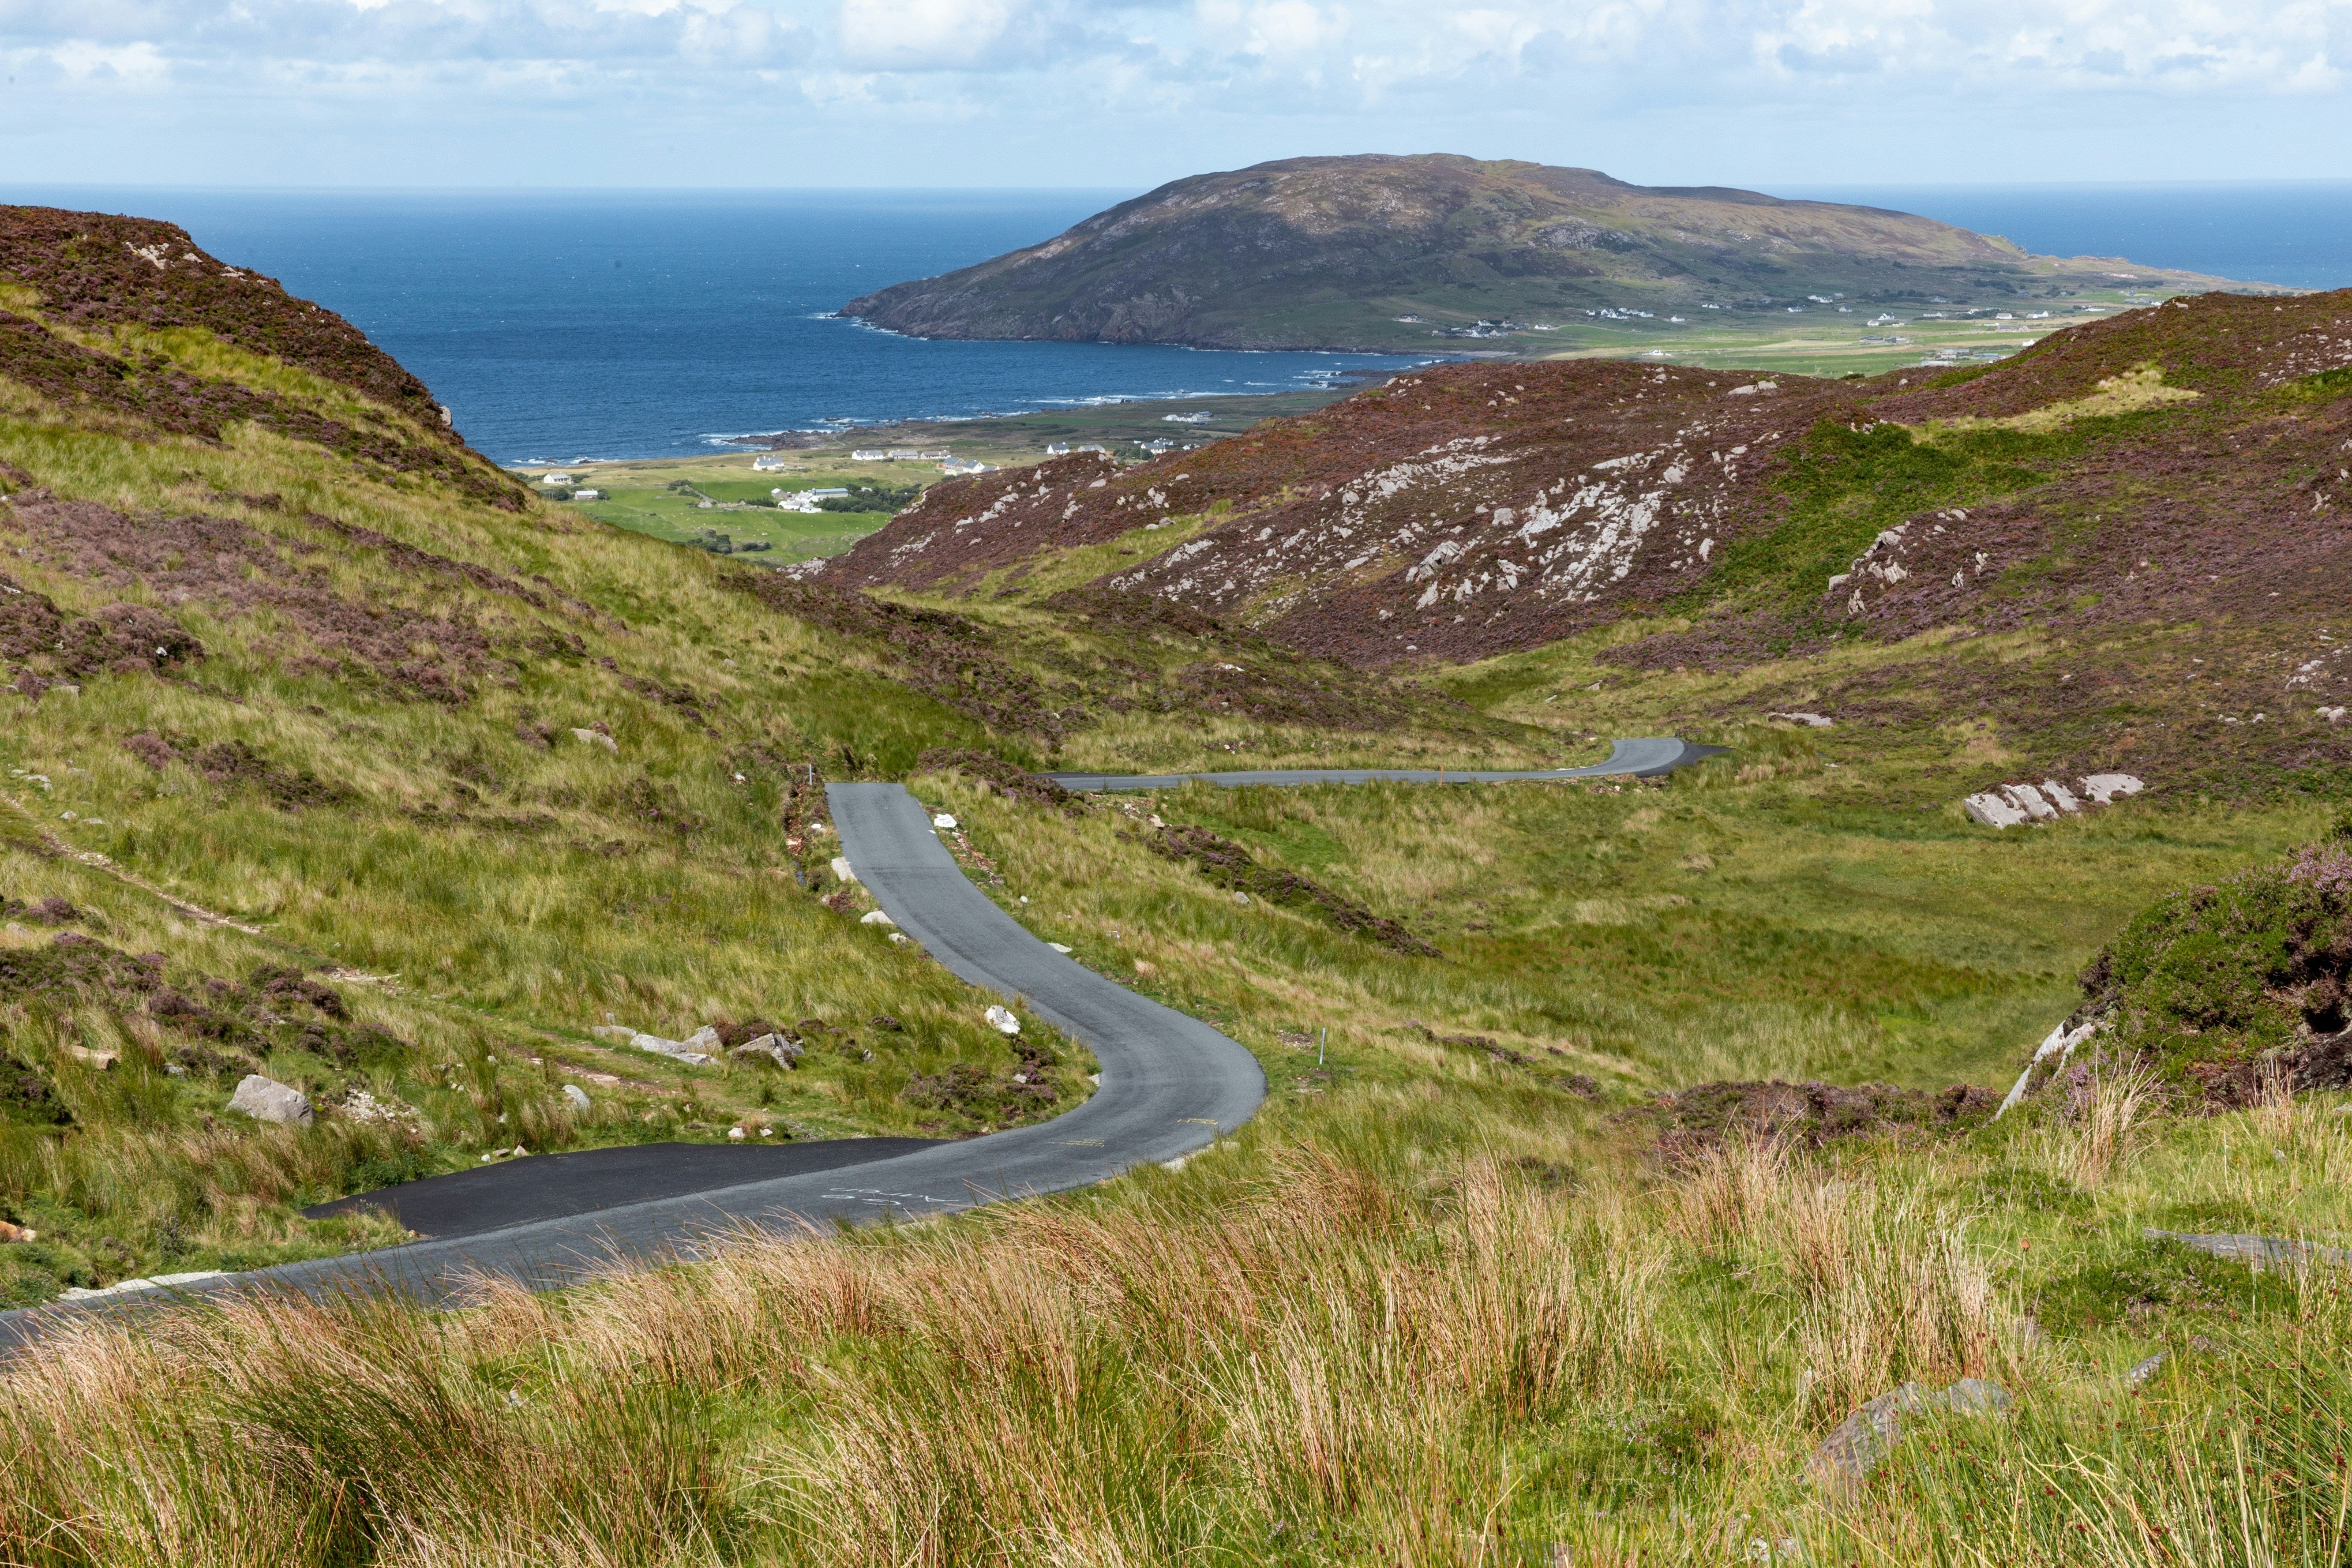  la côte nord-ouest de l'Irlande par Brian Kelly.